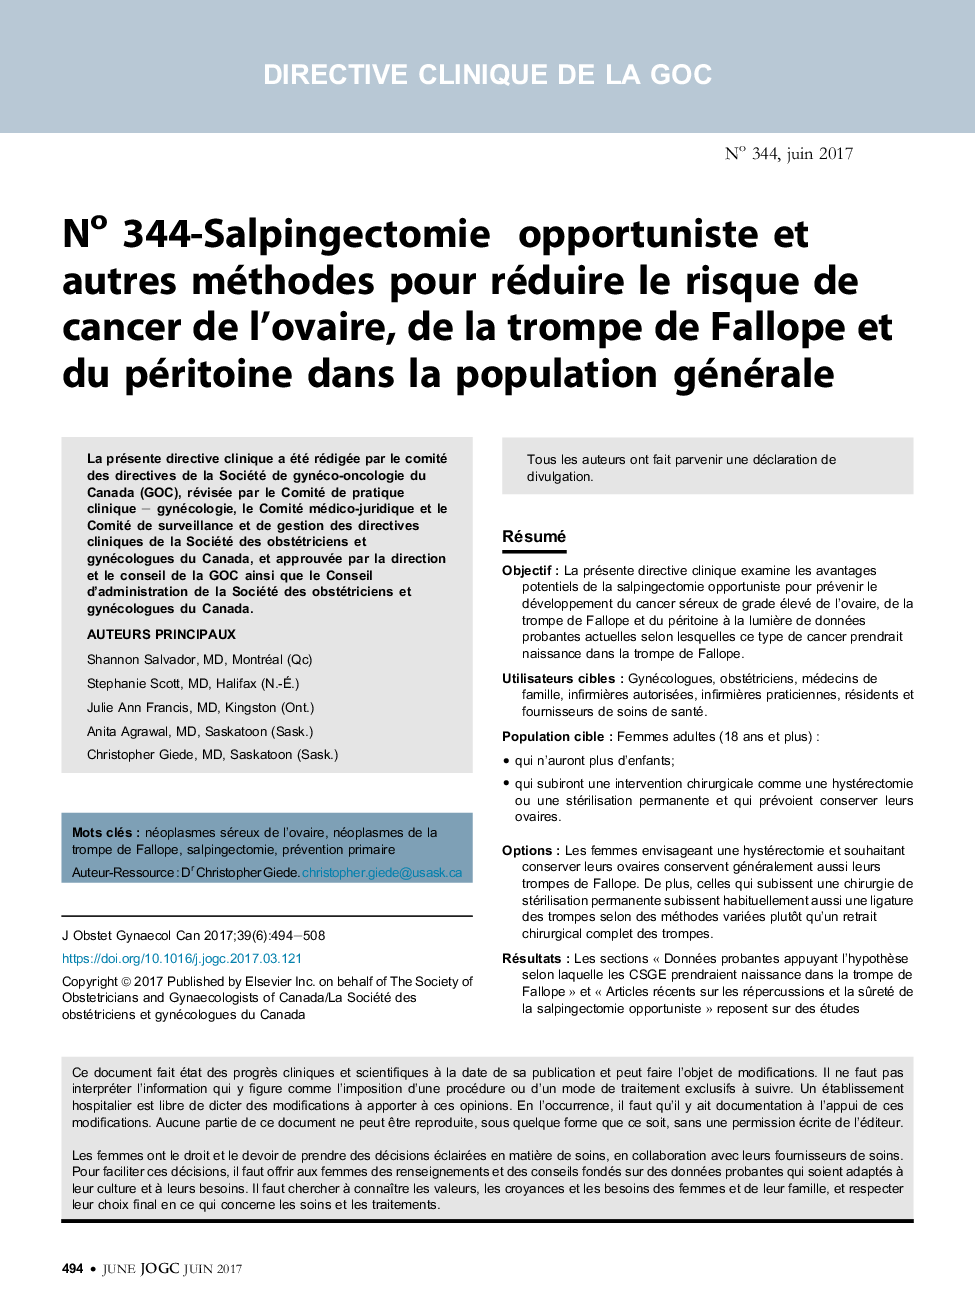 No 344-Salpingectomie opportuniste et autres méthodes pour réduire le risque de cancer de l'ovaire, de la trompe de Fallope et du péritoine dans la population générale